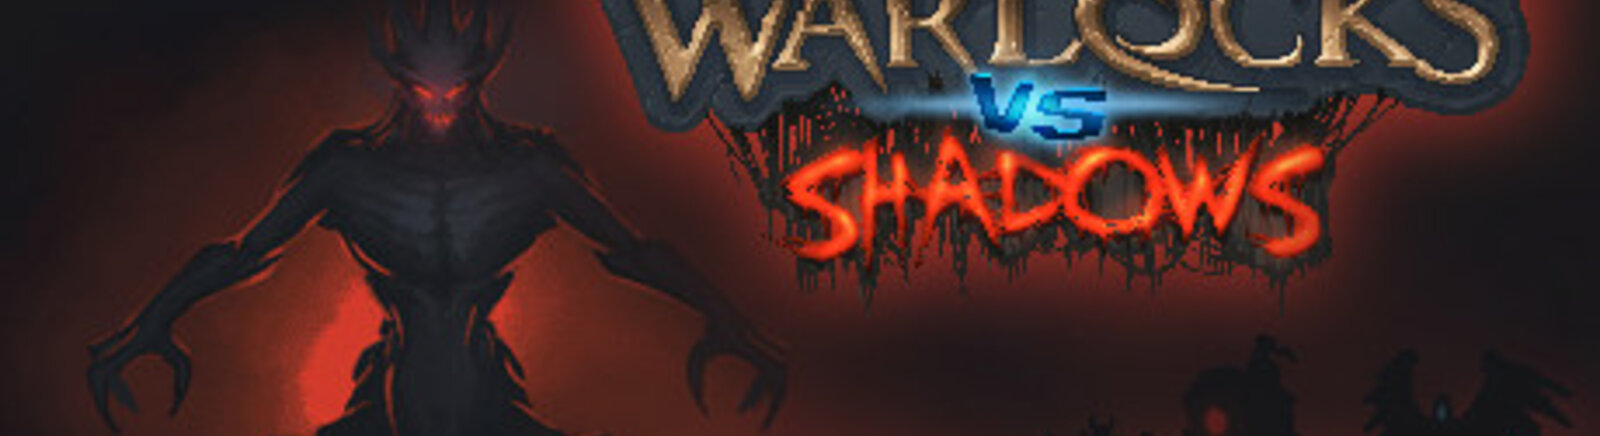 Дата выхода Warlocks vs Shadows (Warlocks)  на PC, PS4 и Mac в России и во всем мире